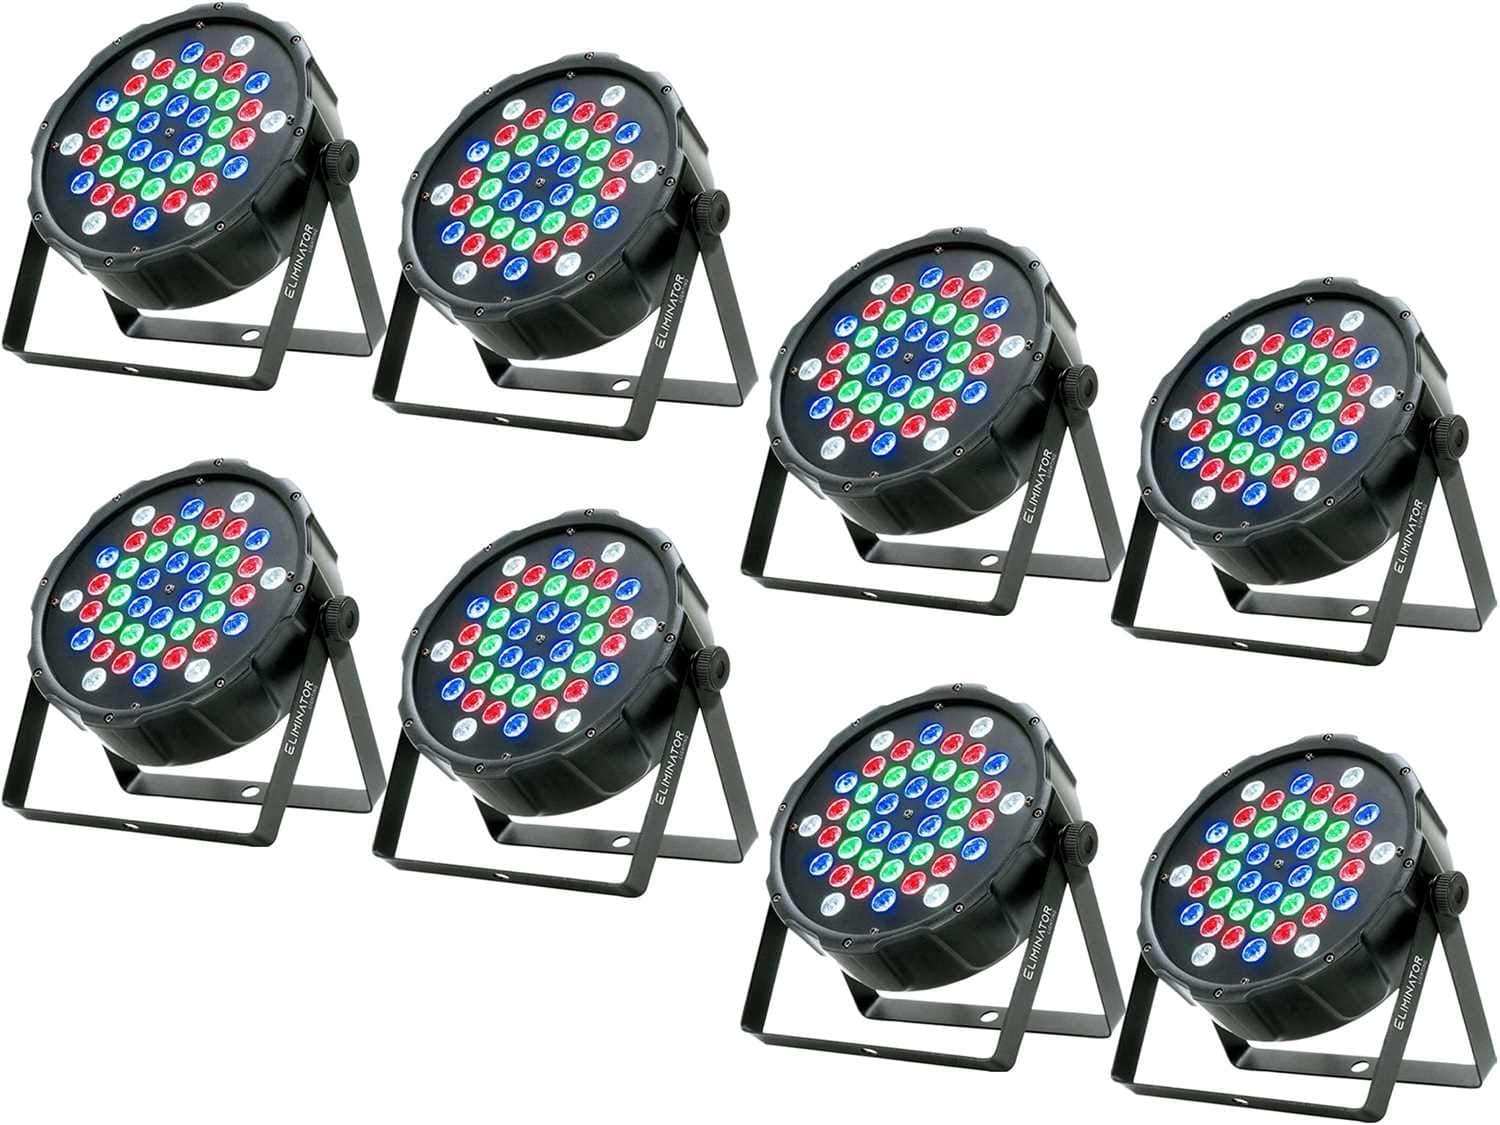 Eliminator LP 42 RGBW LED Par Wash Light 8-Pack - PSSL ProSound and Stage Lighting